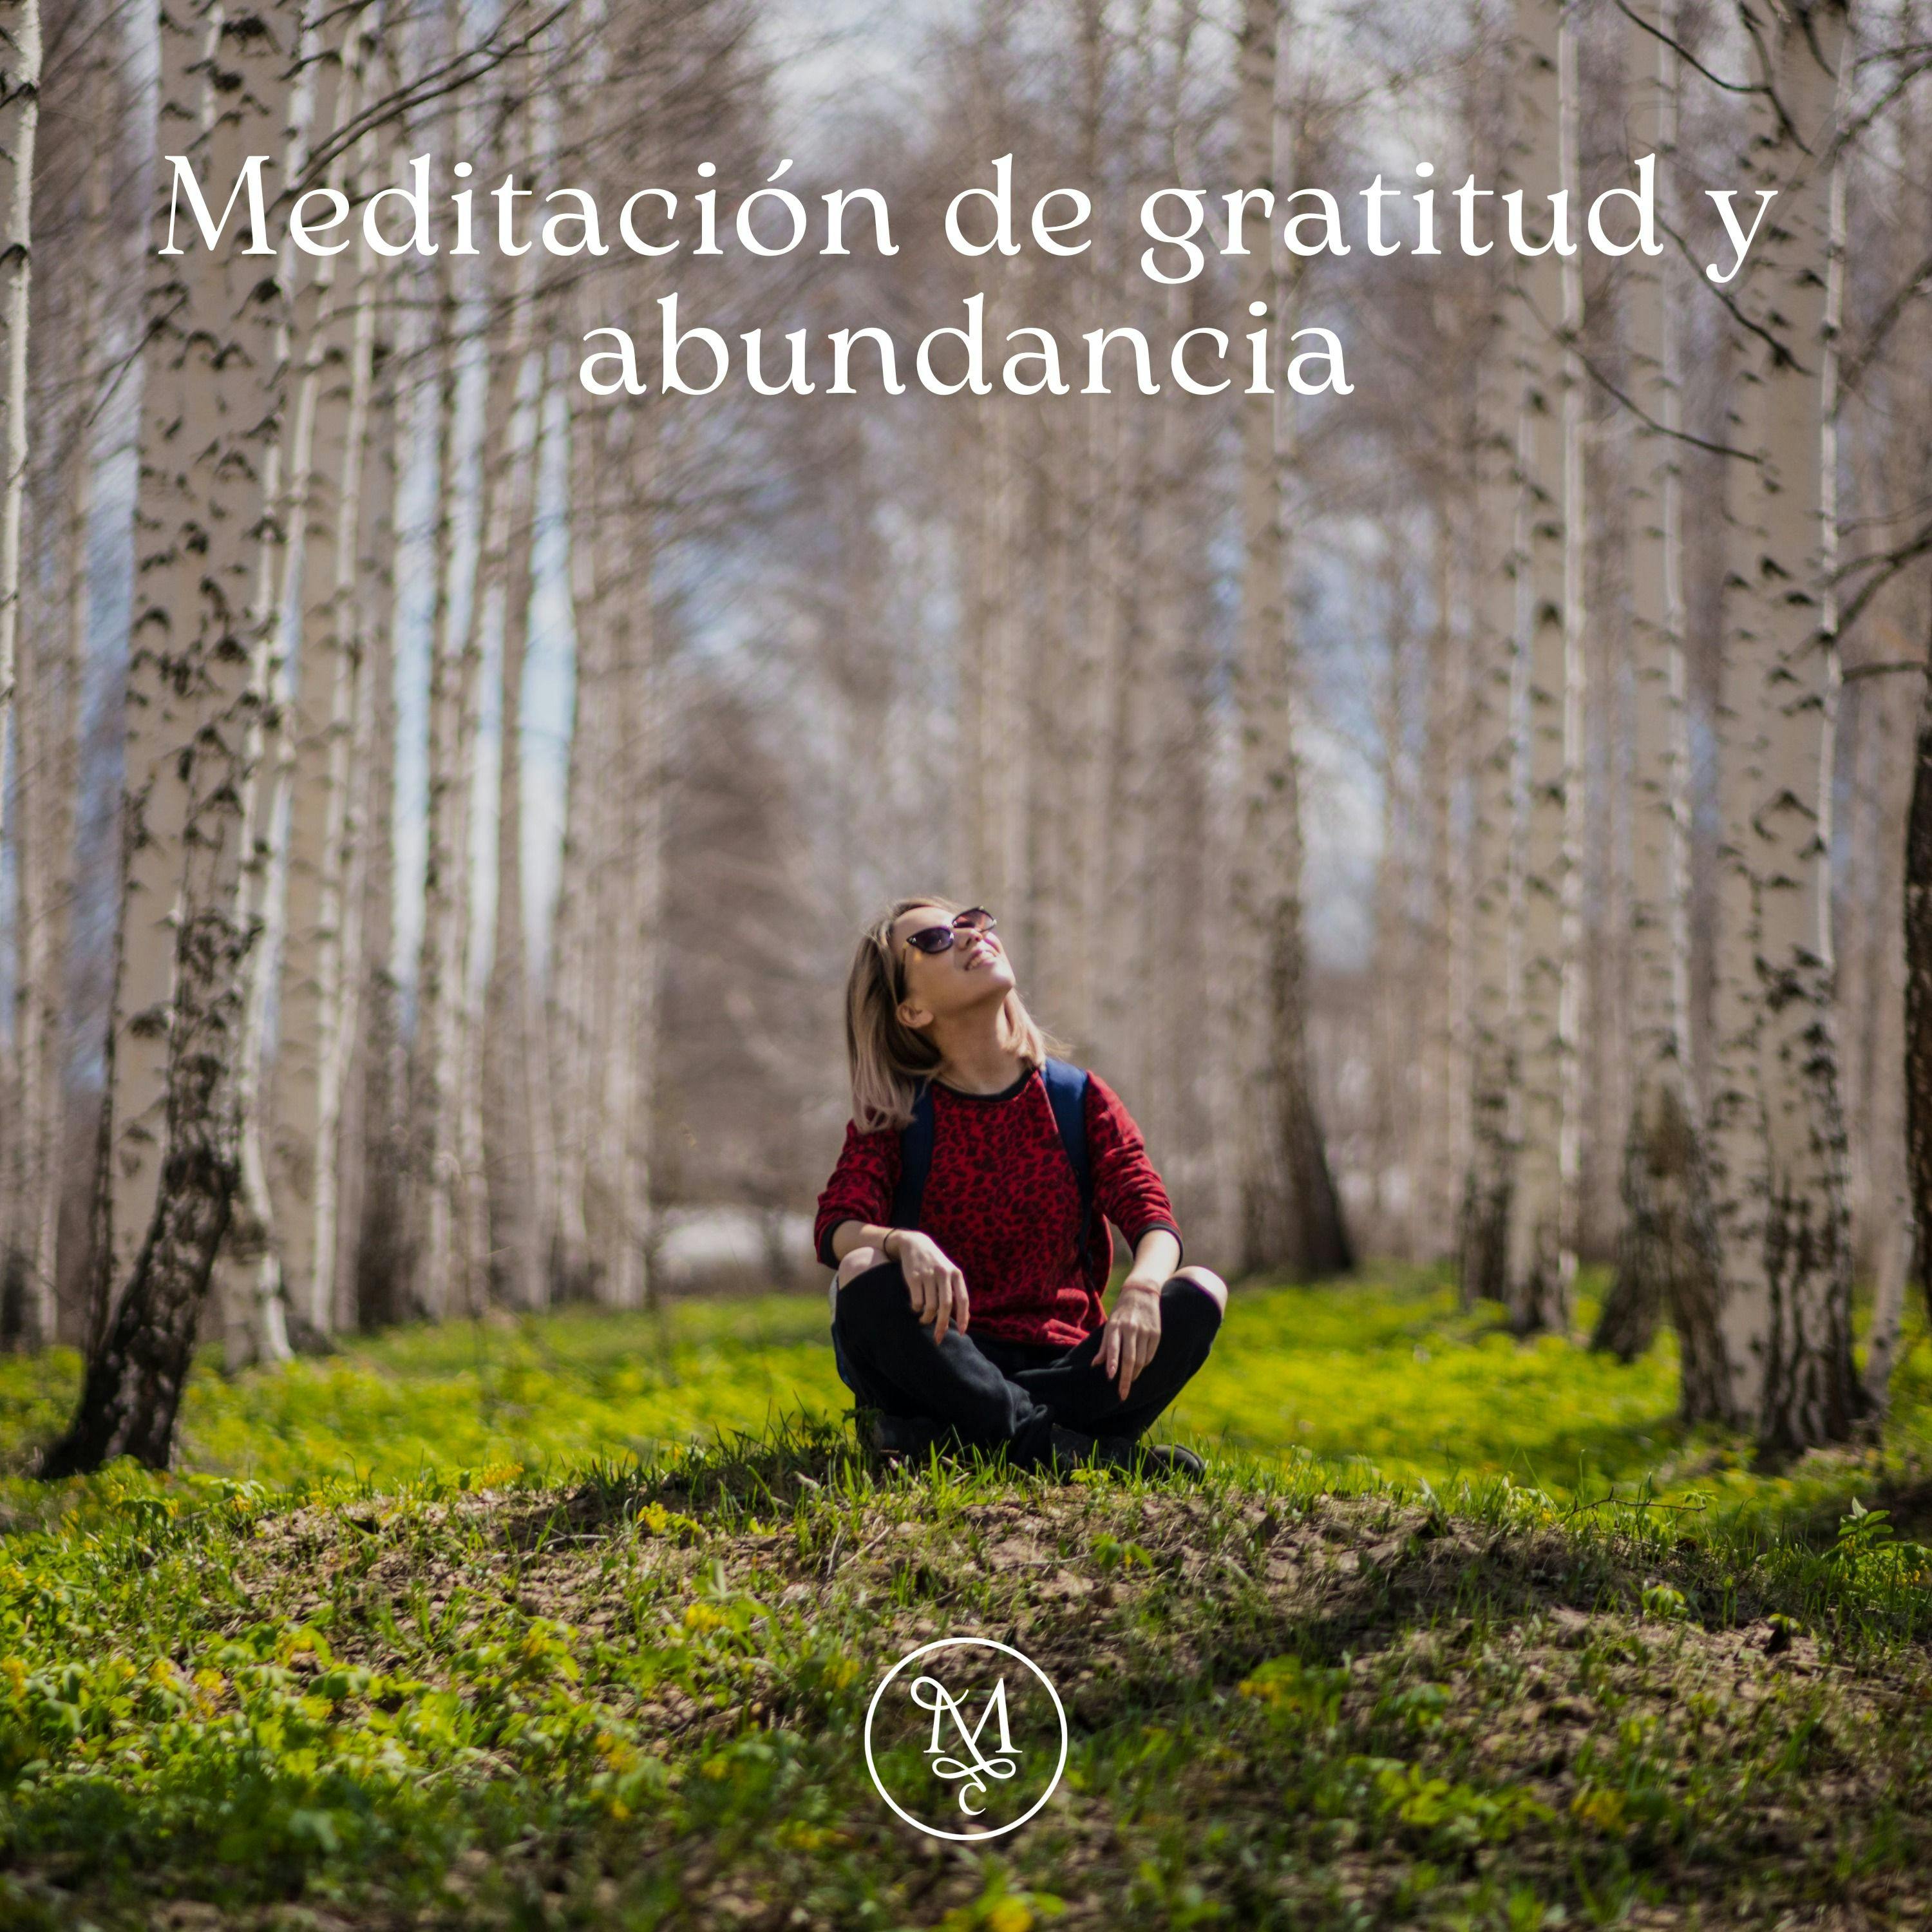 Meditación de abundancia y gratitud 🌬️💆‍♀️ 🌊| 10 mins | Encuentra tu paz interior ✨